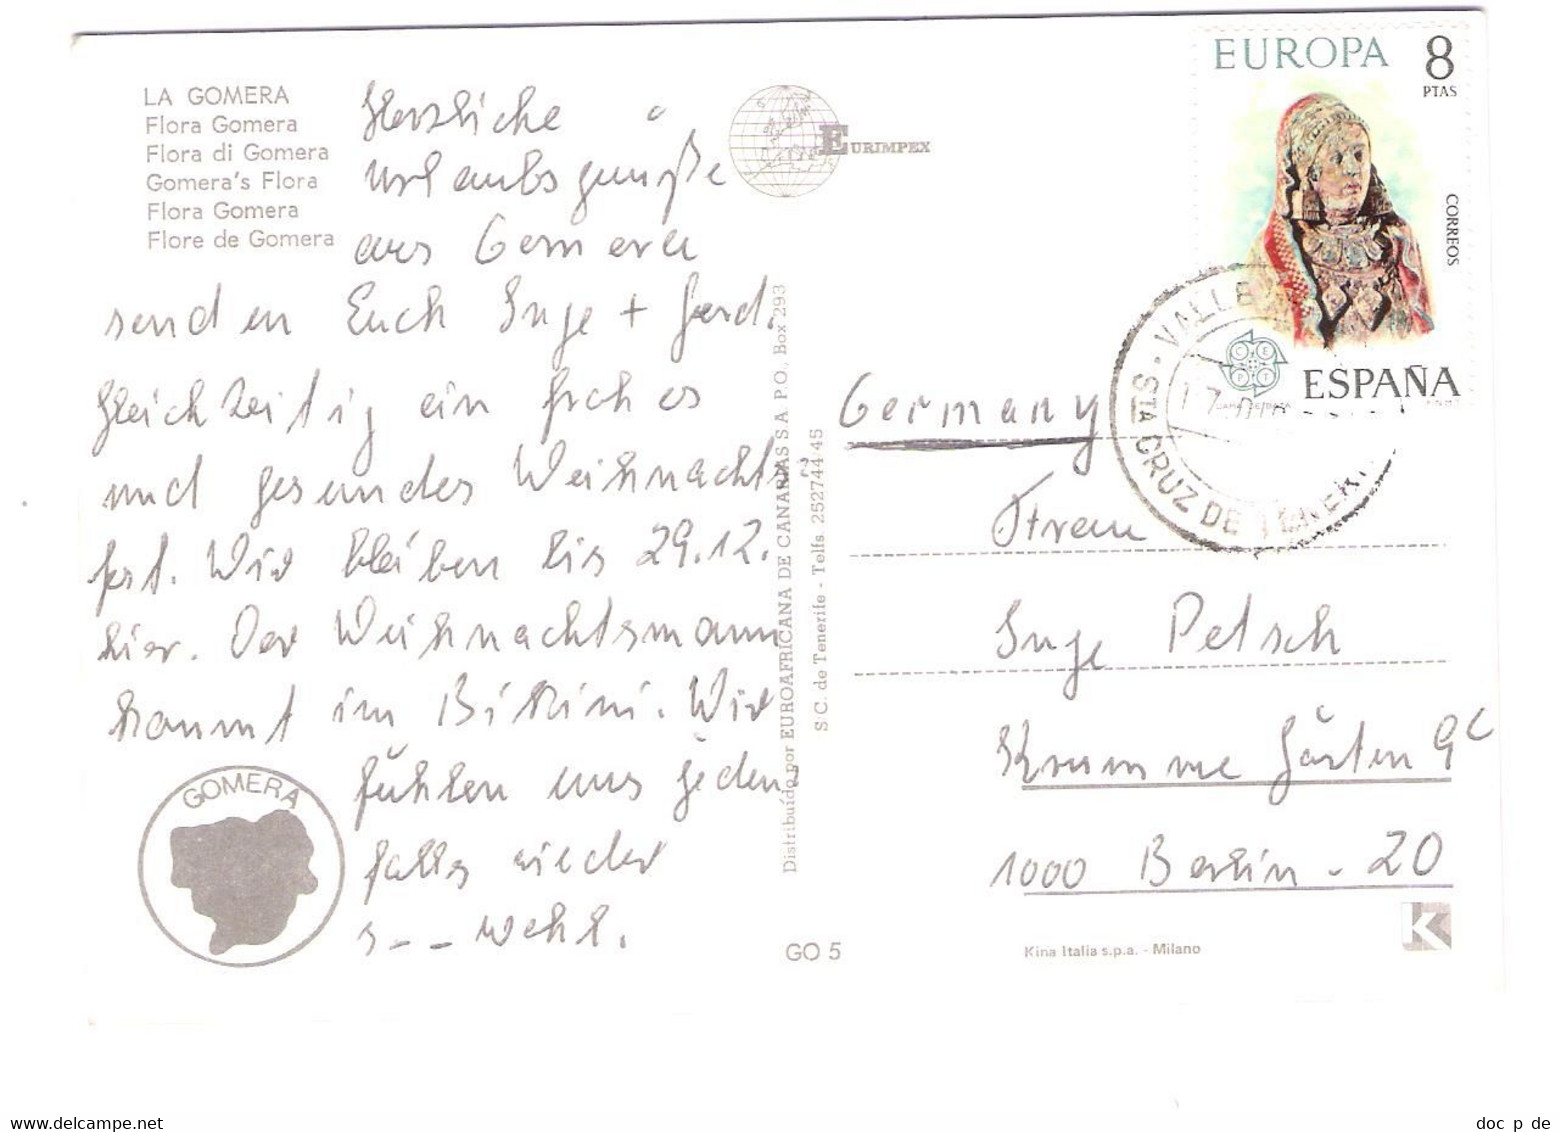 Spain - La Gomera - Flora Gomera - Nice EUROPA CEPT Stamp Timbre - Gomera